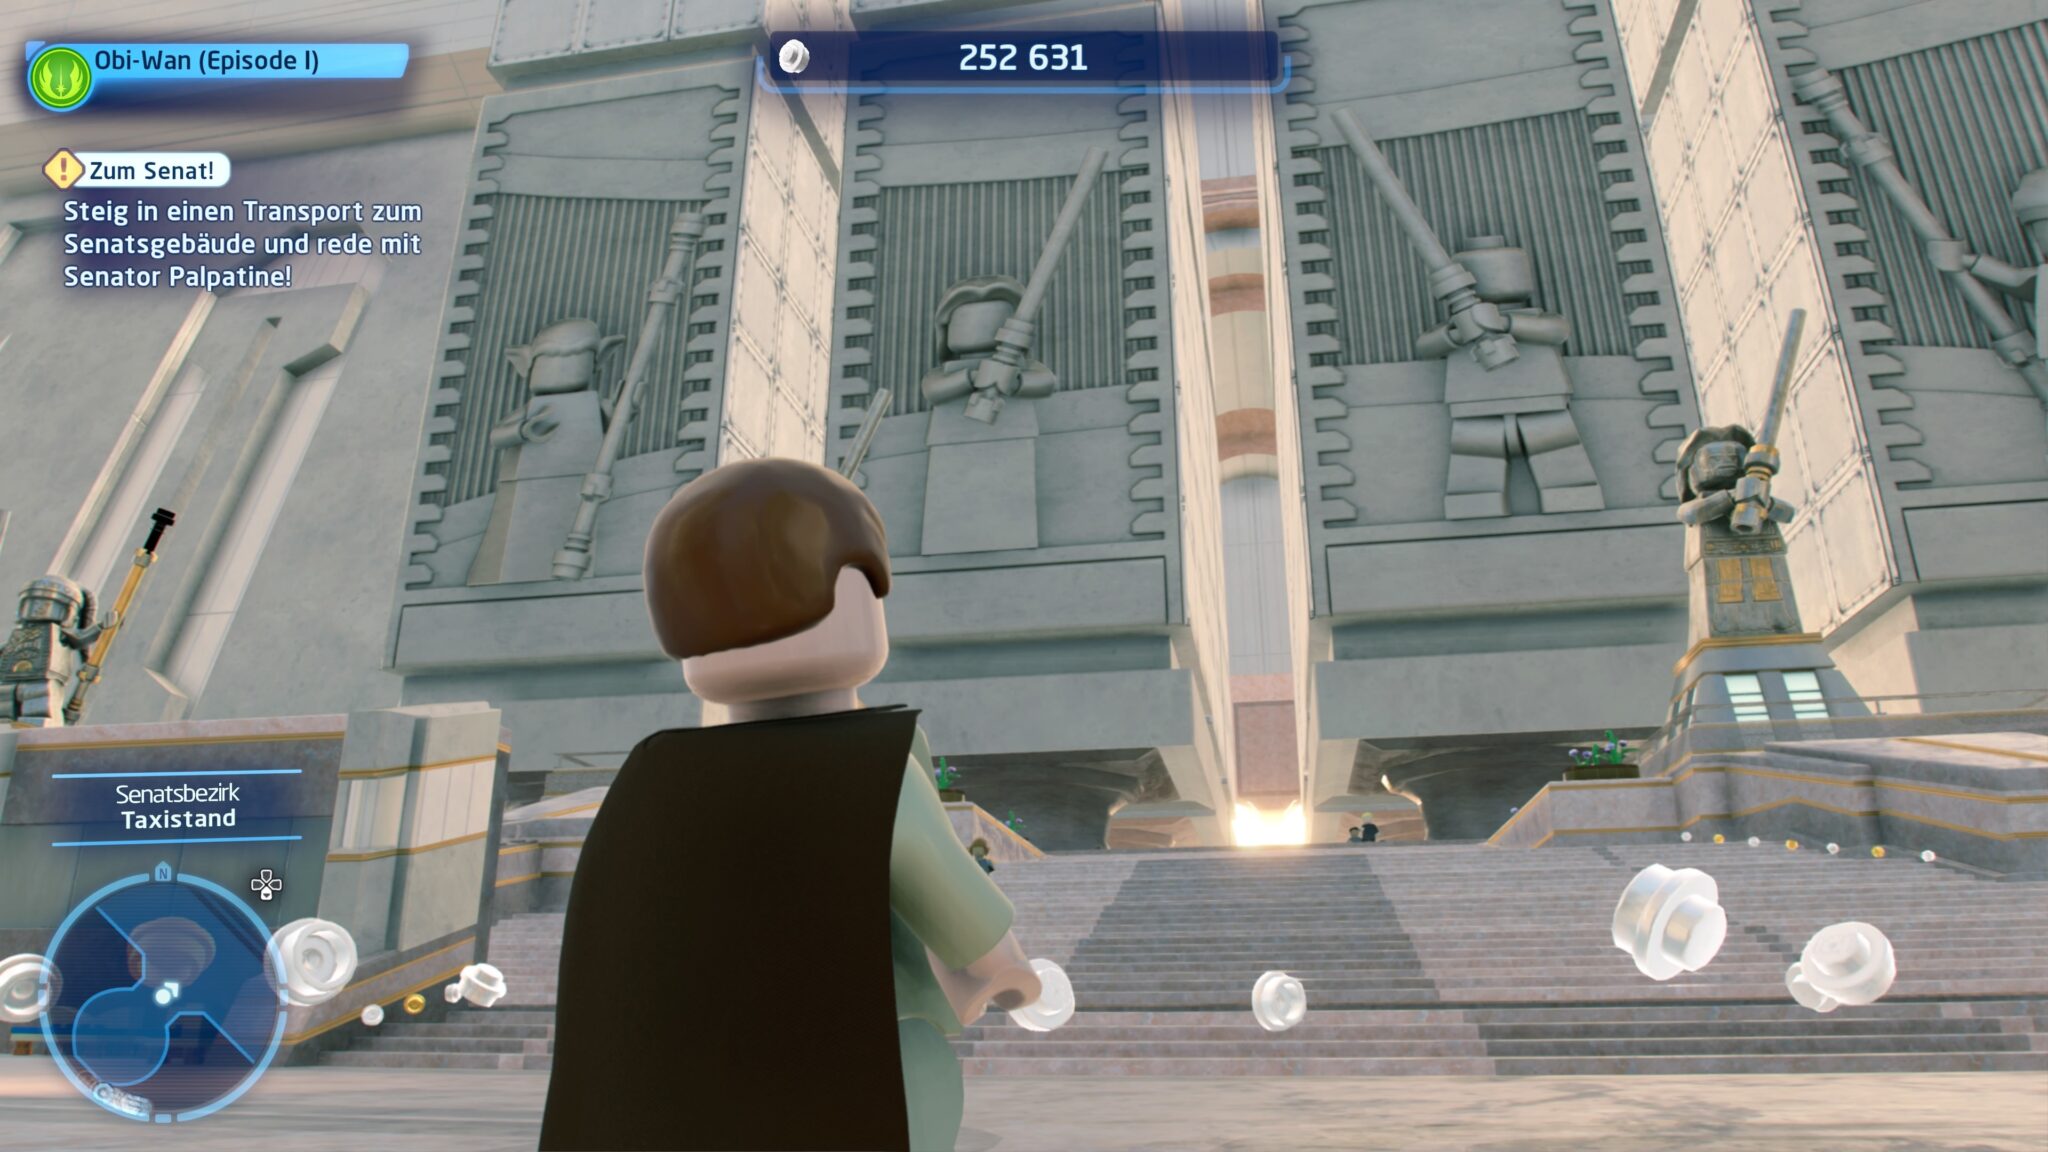 Incluso con las figuras de Lego, el Templo Jedi tiene un aspecto realmente impresionante desde el exterior.